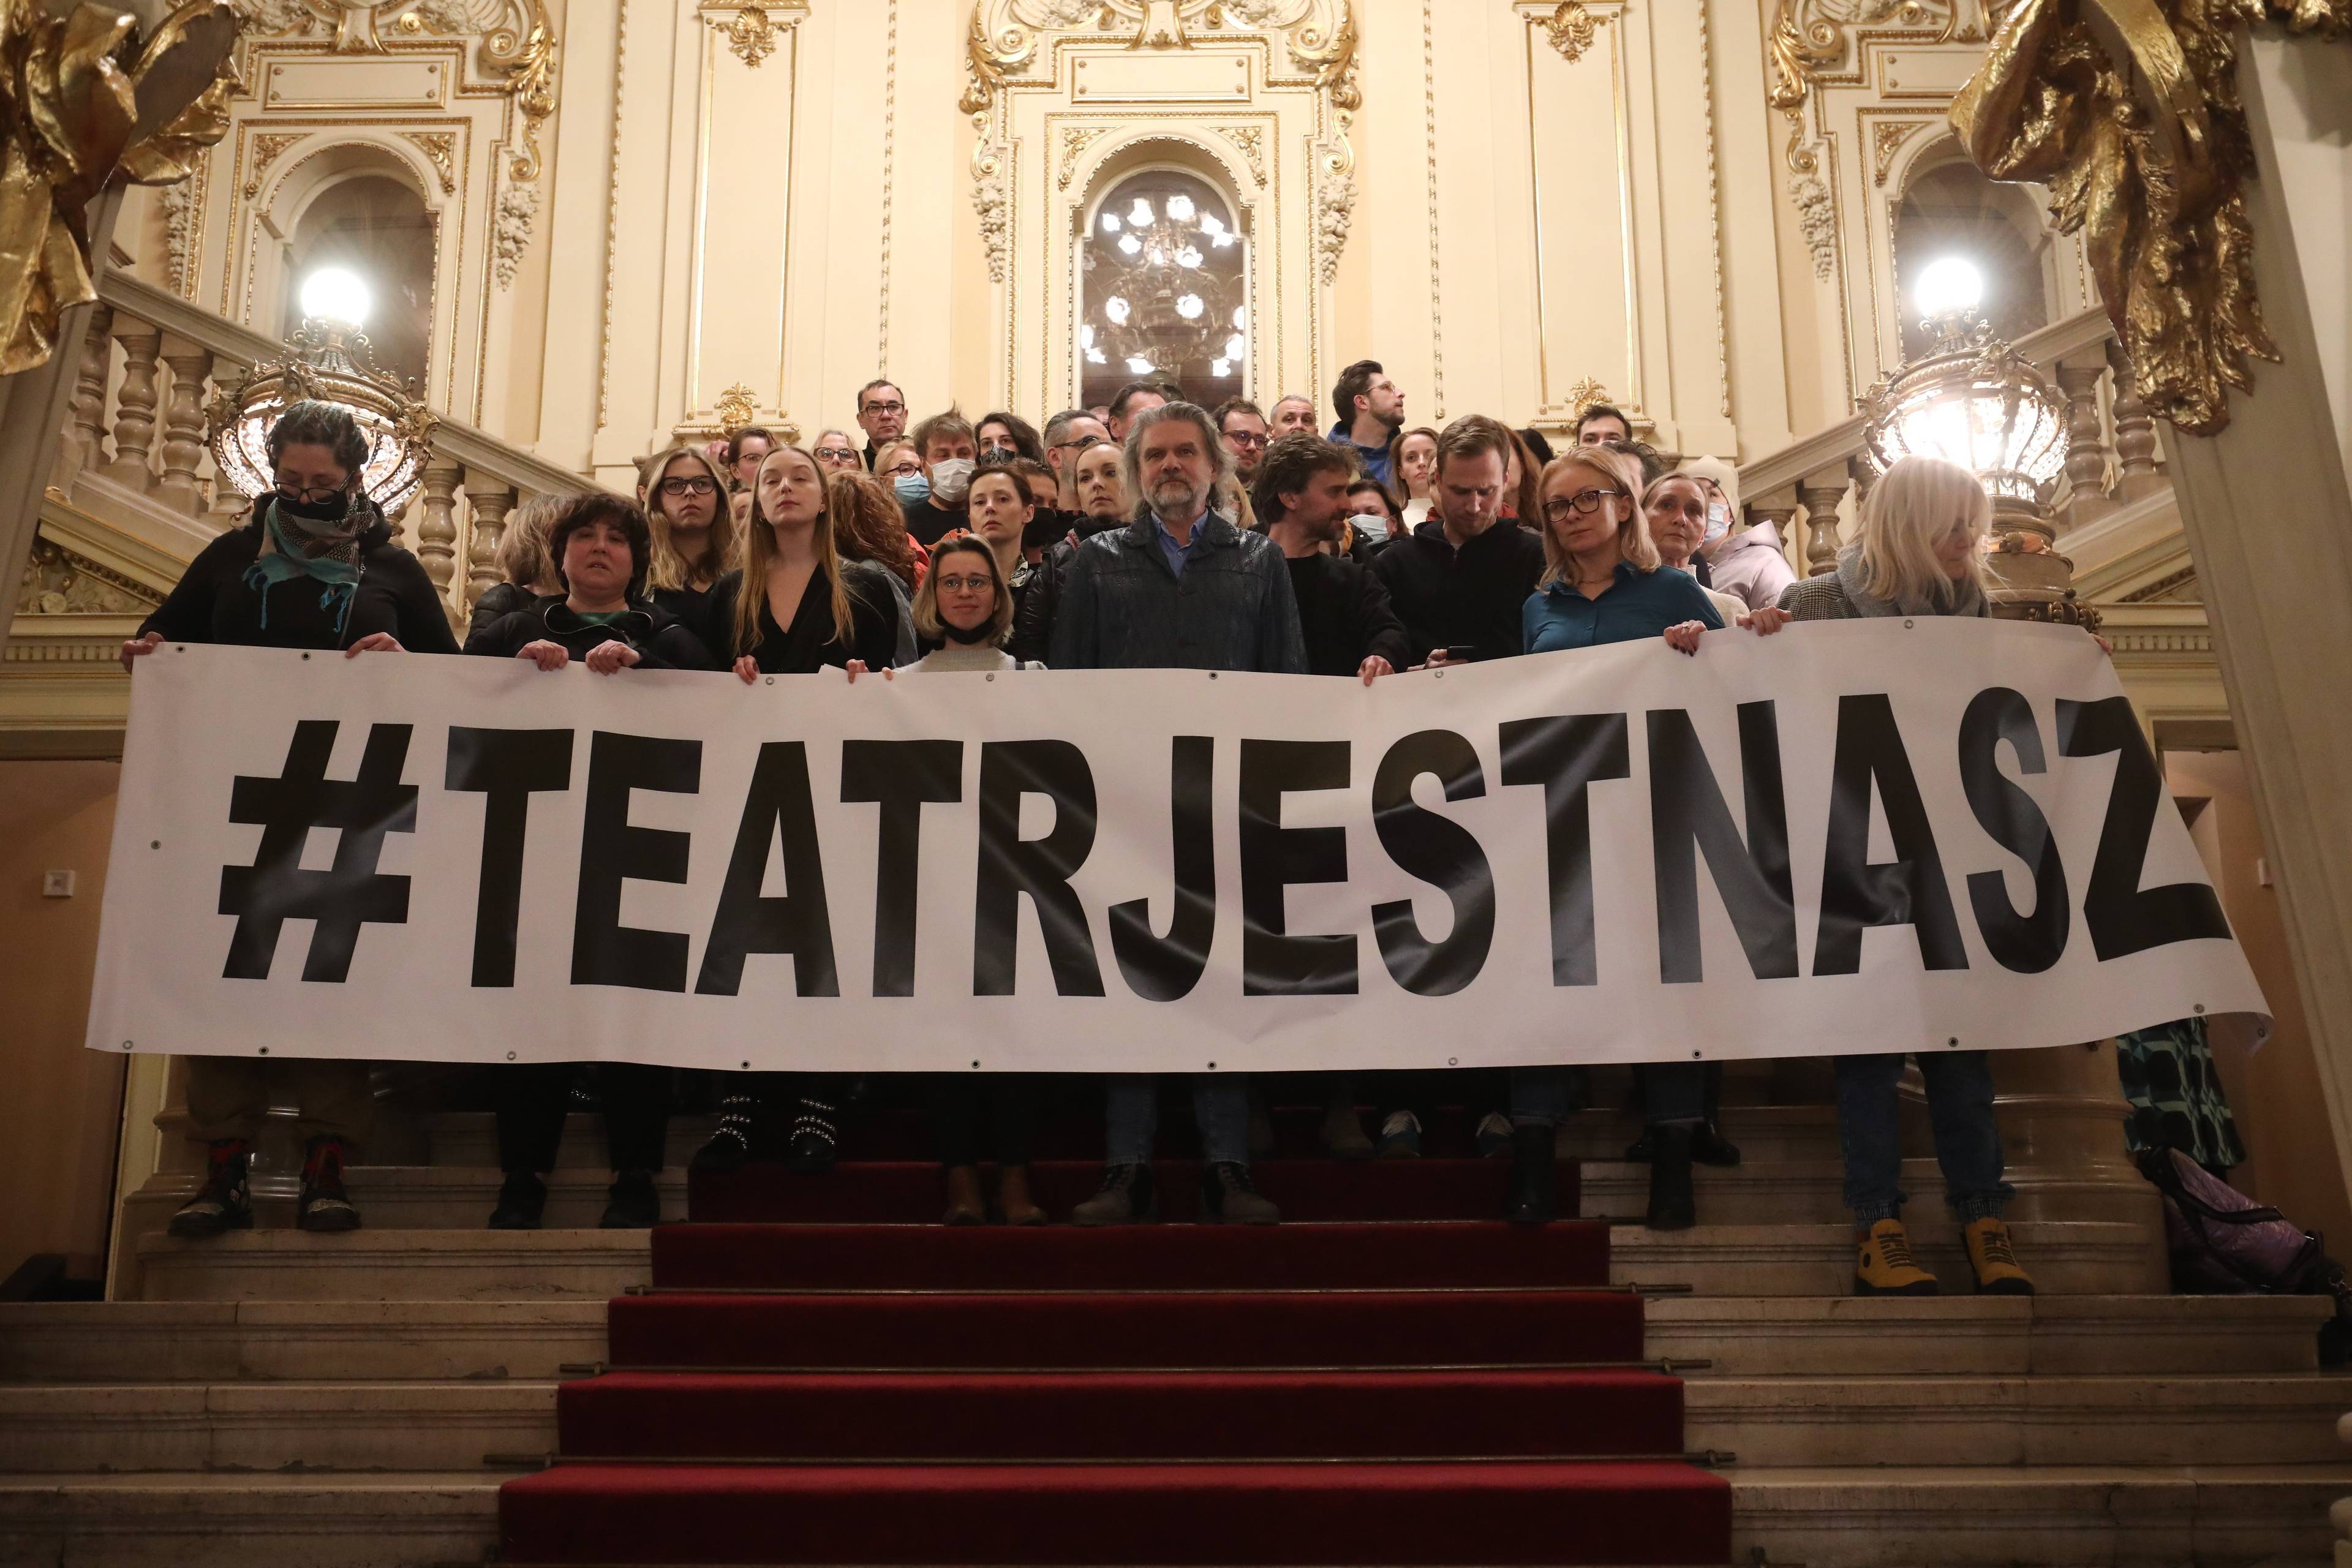 grupa osób stoi na schodach i trzyma napis "Teatr jest nasz"